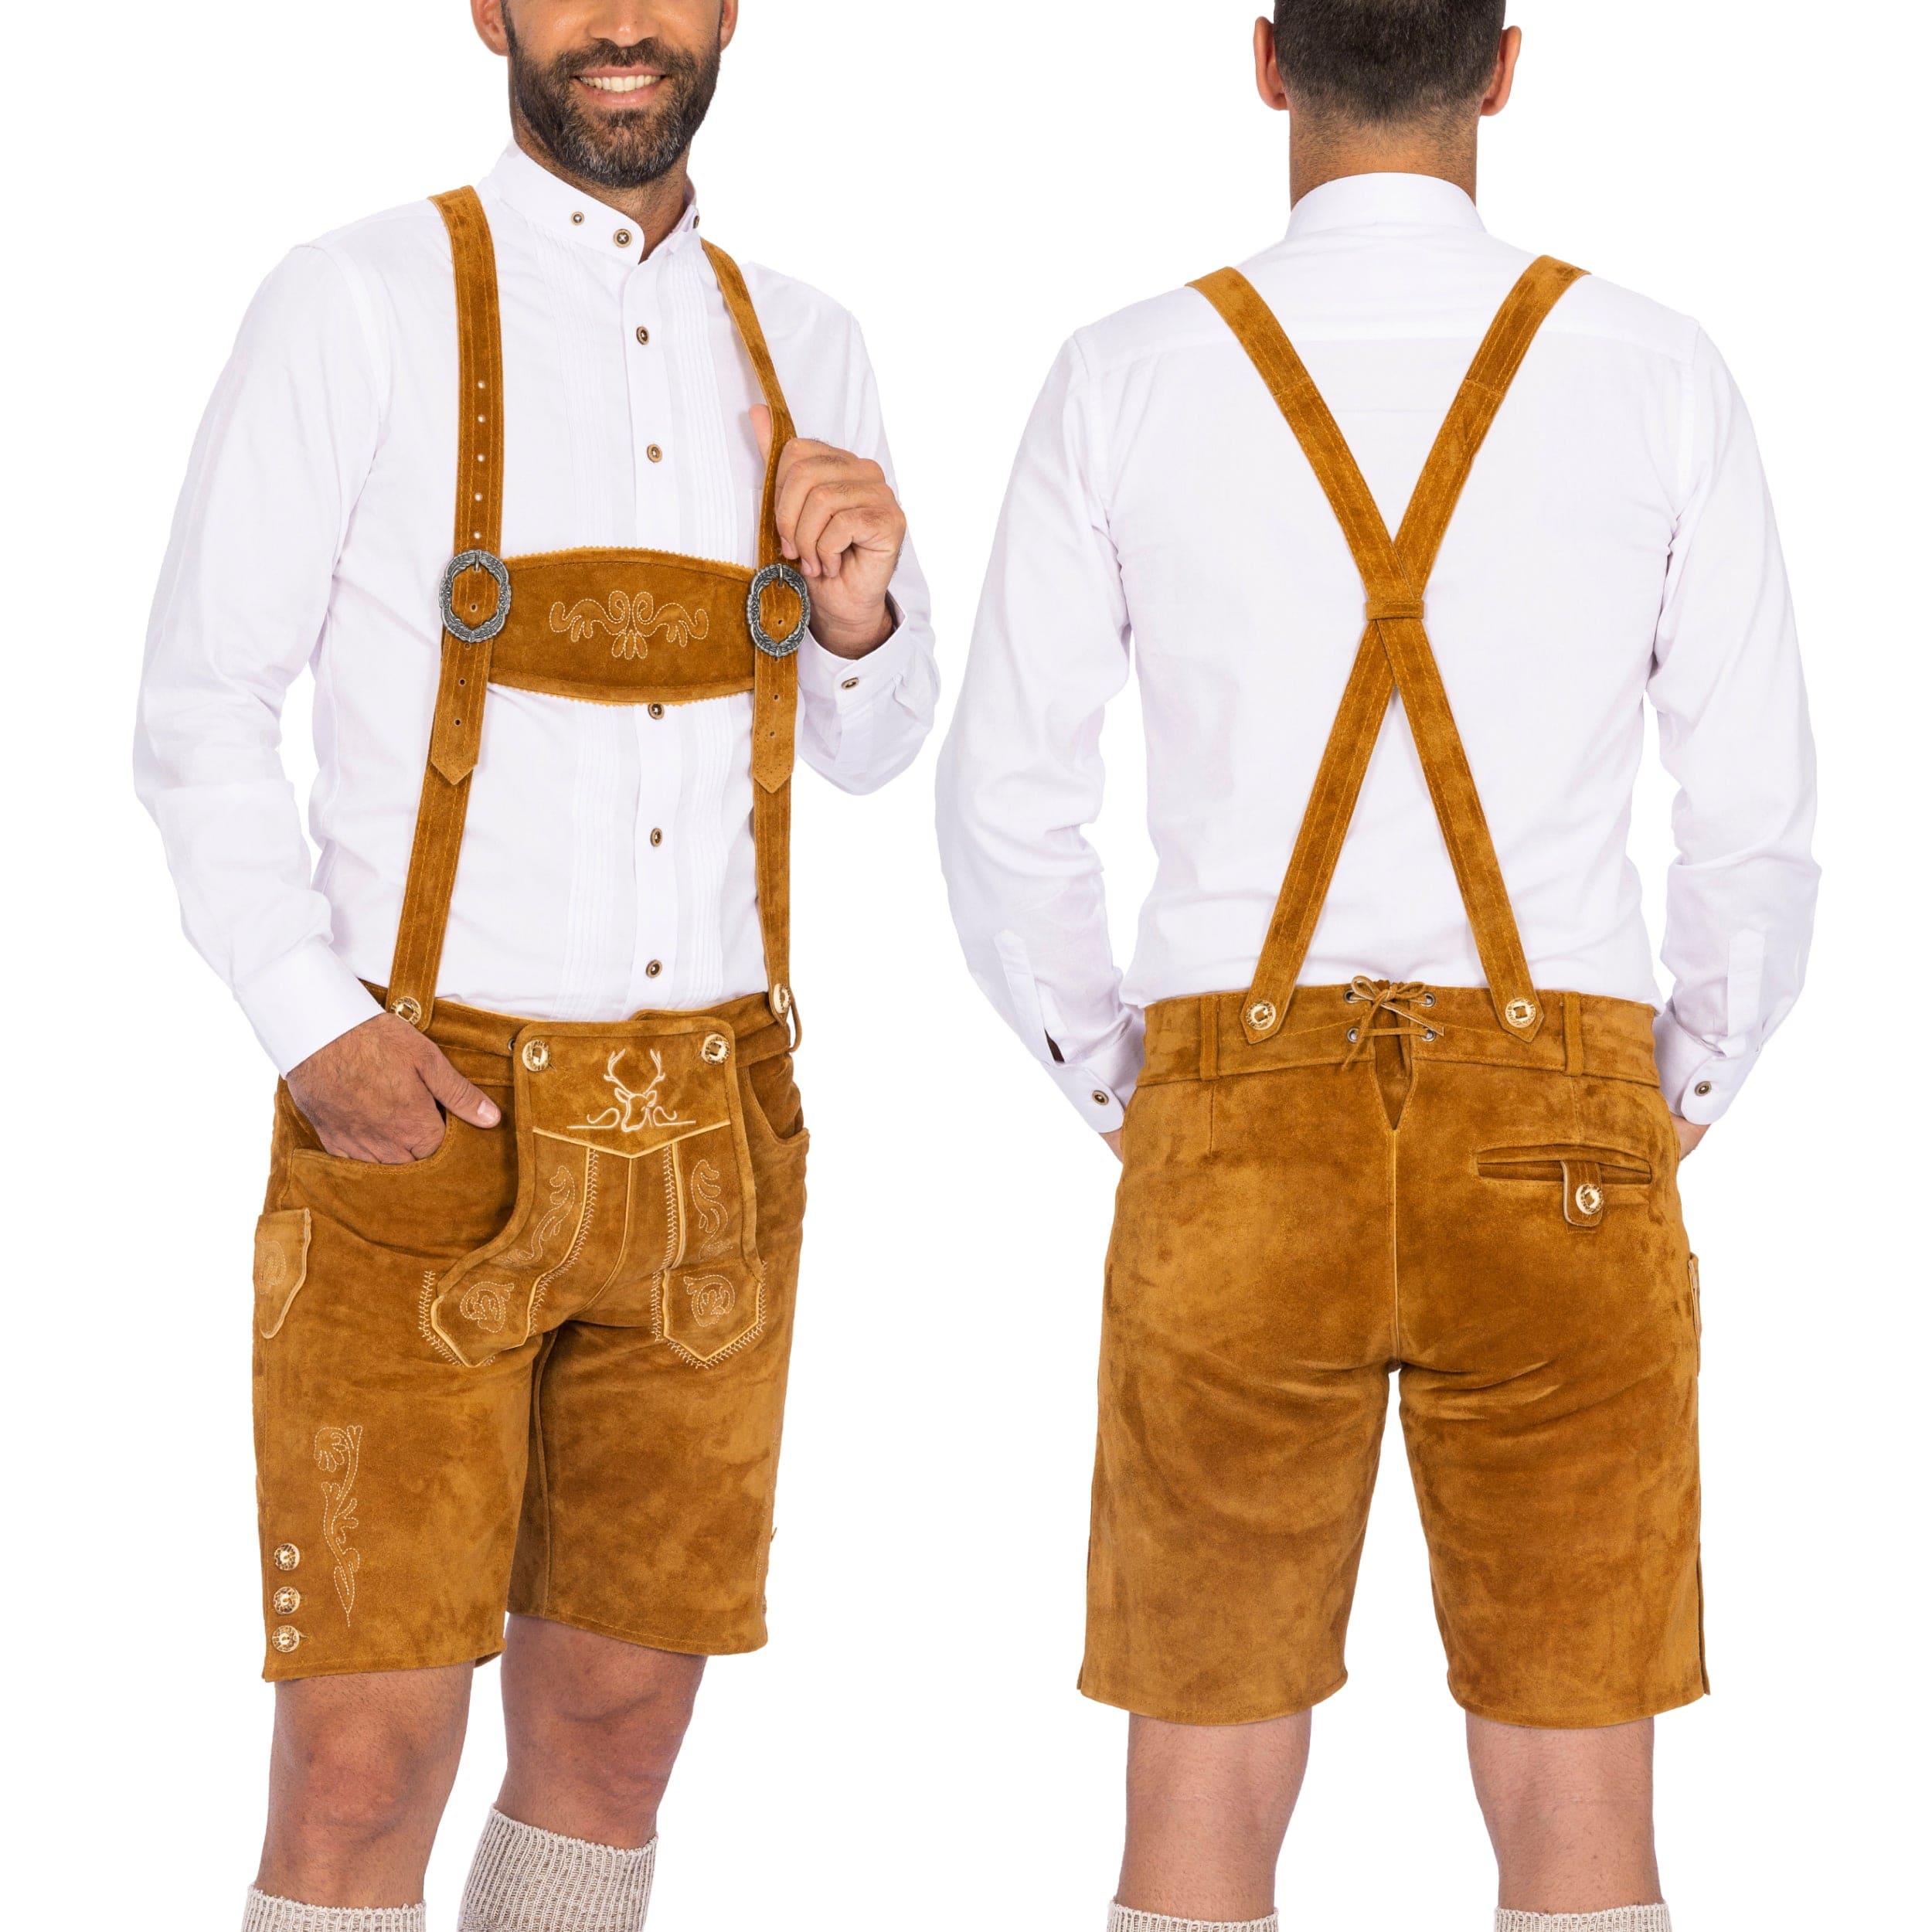 Bavaria Trachten Lederhosen Men Short Light Brown Oktoberfest 